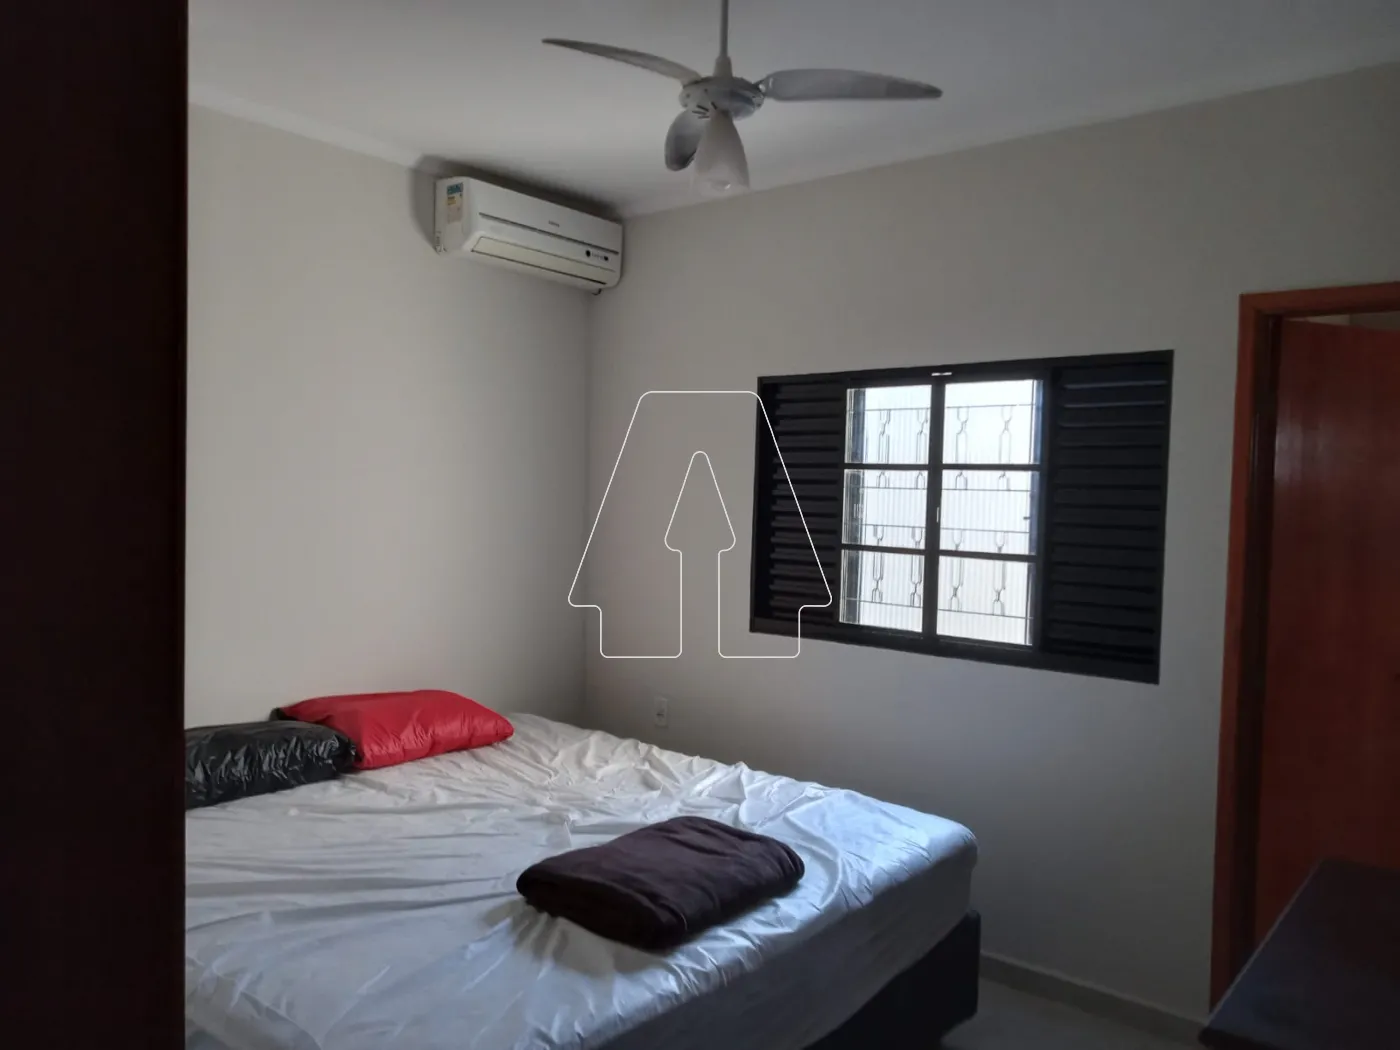 Comprar Casa / Residencial em Araçatuba R$ 350.000,00 - Foto 10